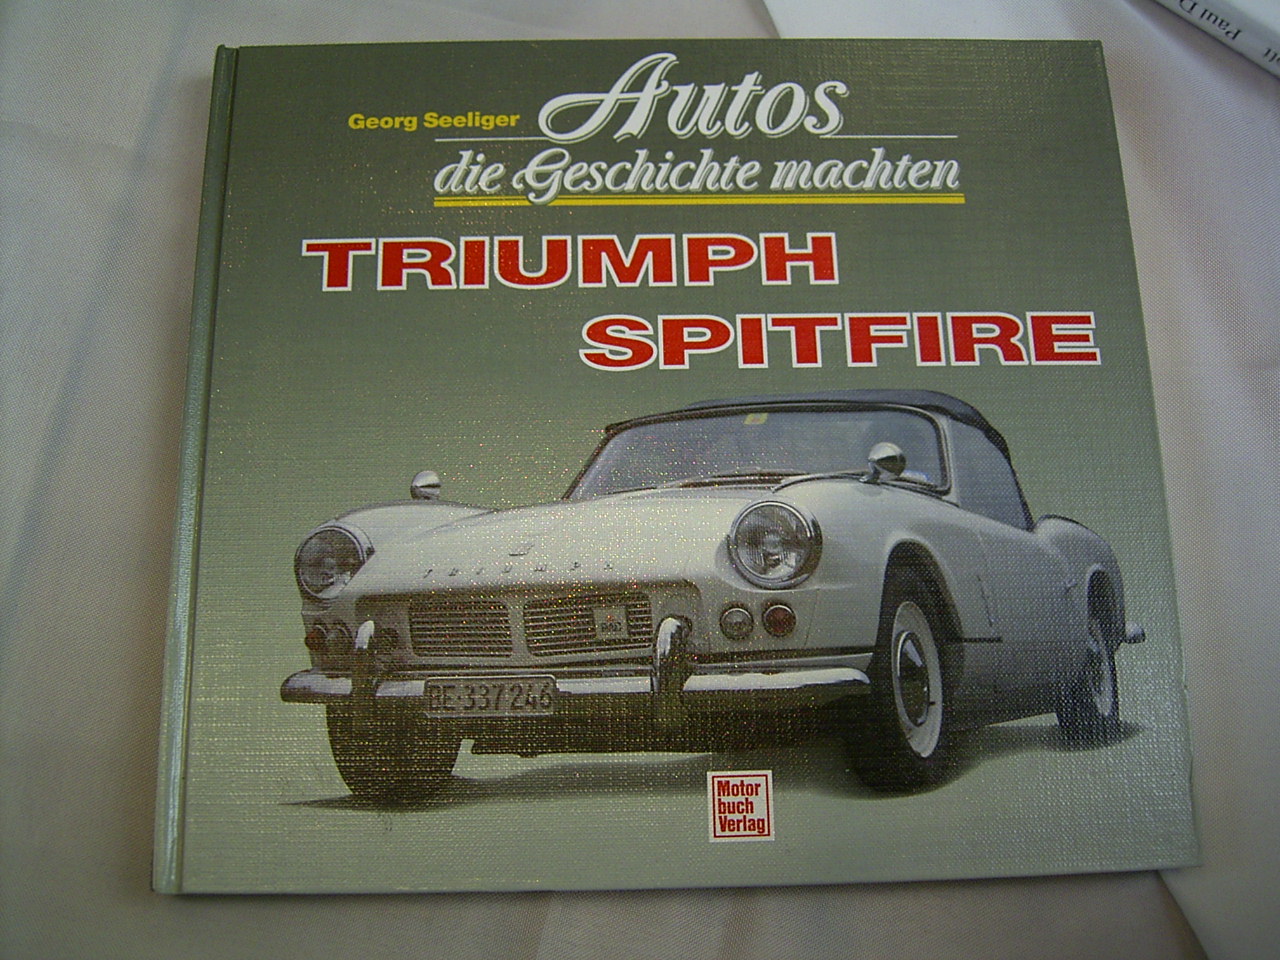 Triumph Spitfire - Autos die Geschichte machten (Georg Seeliger, Motorbuch-Verlag) 